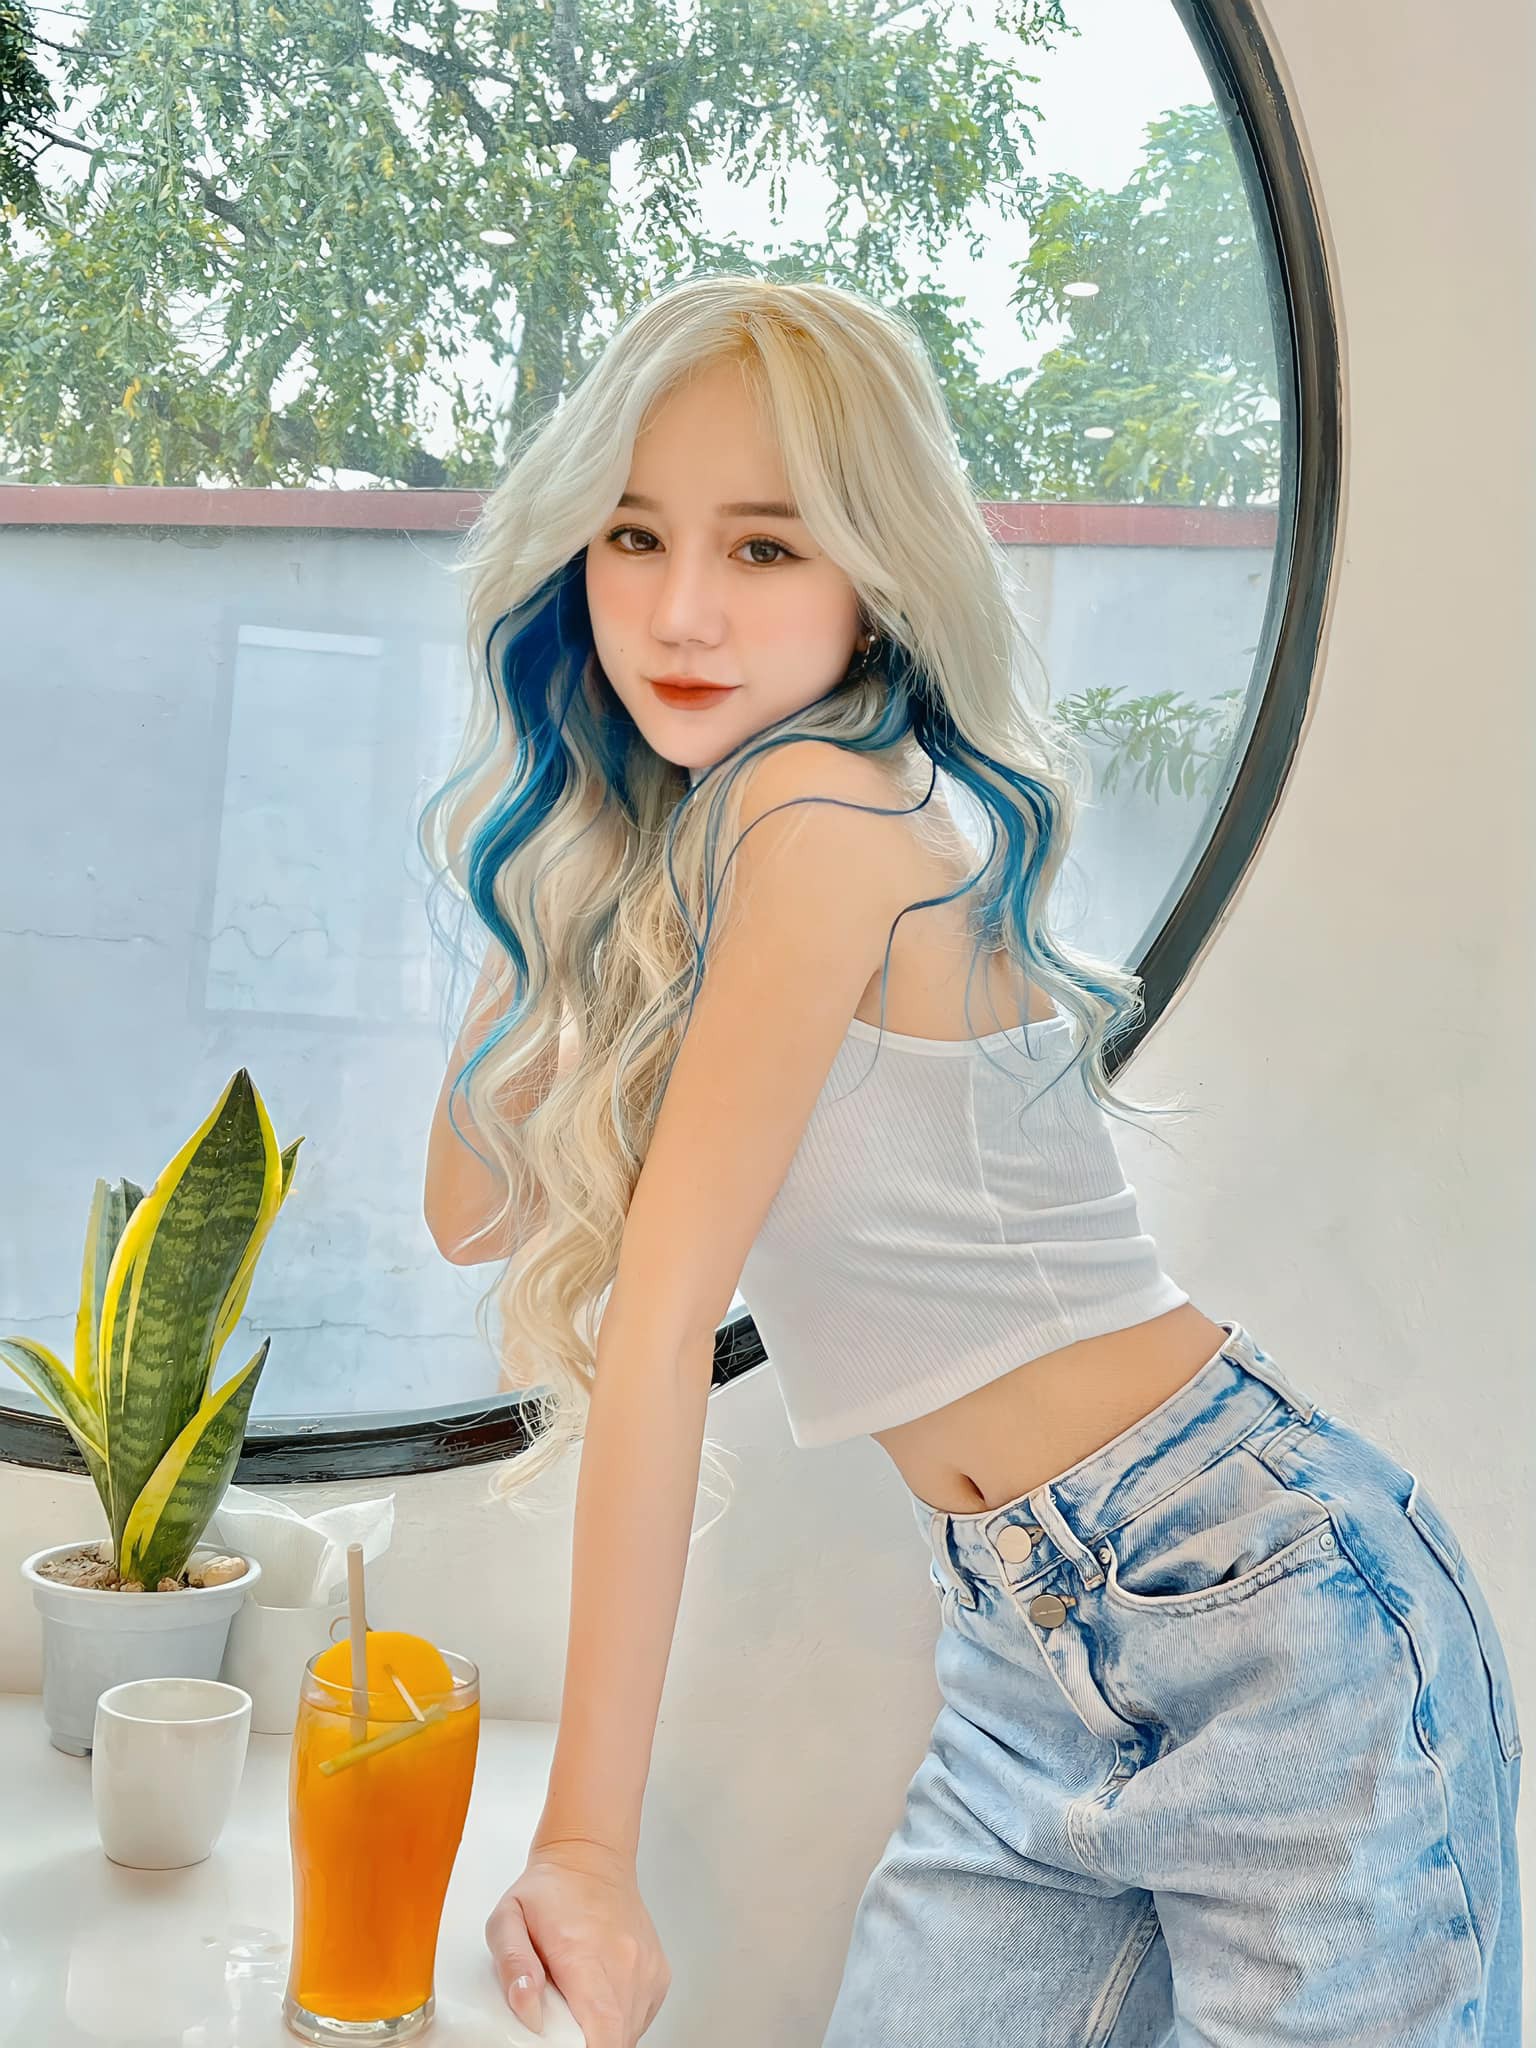 Nữ streamer tóc bạch kim lộ body, netizen hết lời khen ngợi - Hình 4